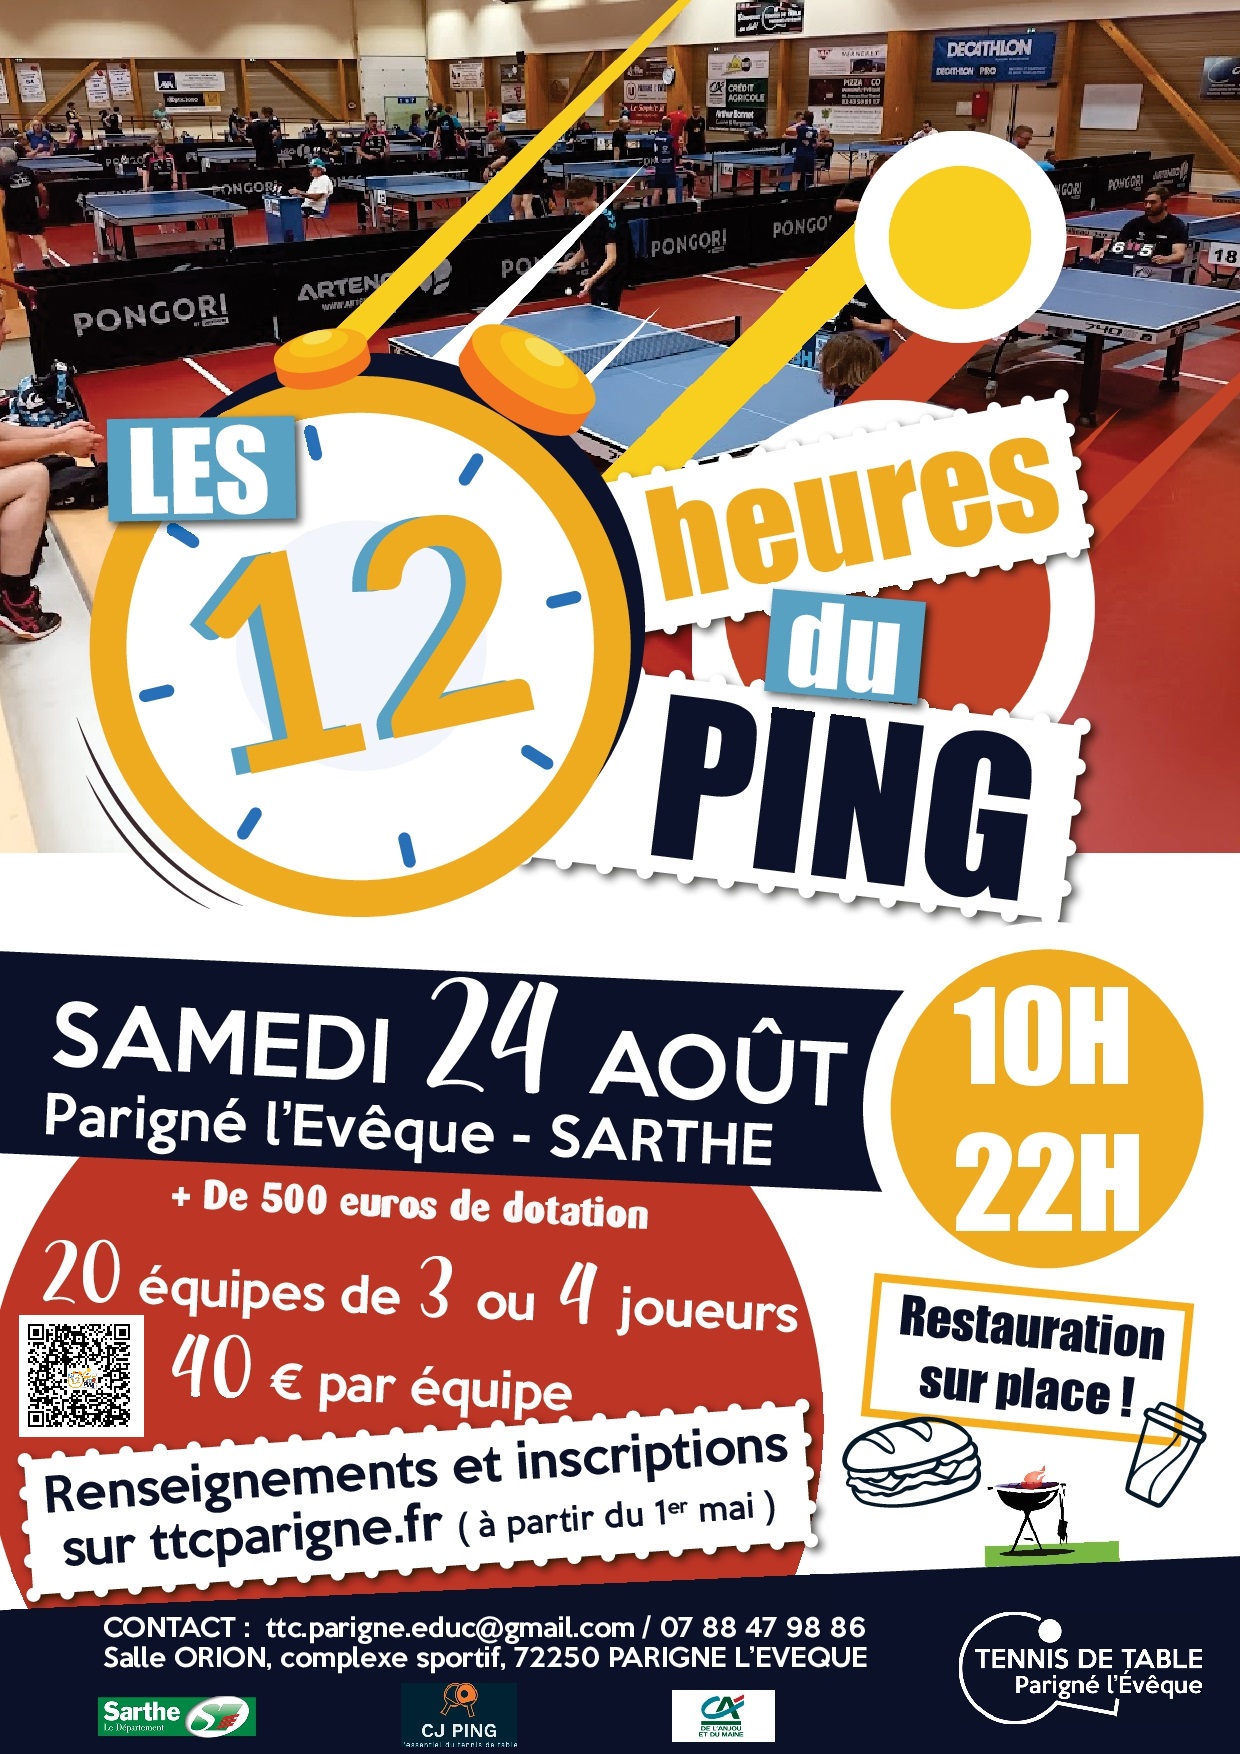 Le club de Parigné L'évèque organise la 3ème édition des 12 heures du ping